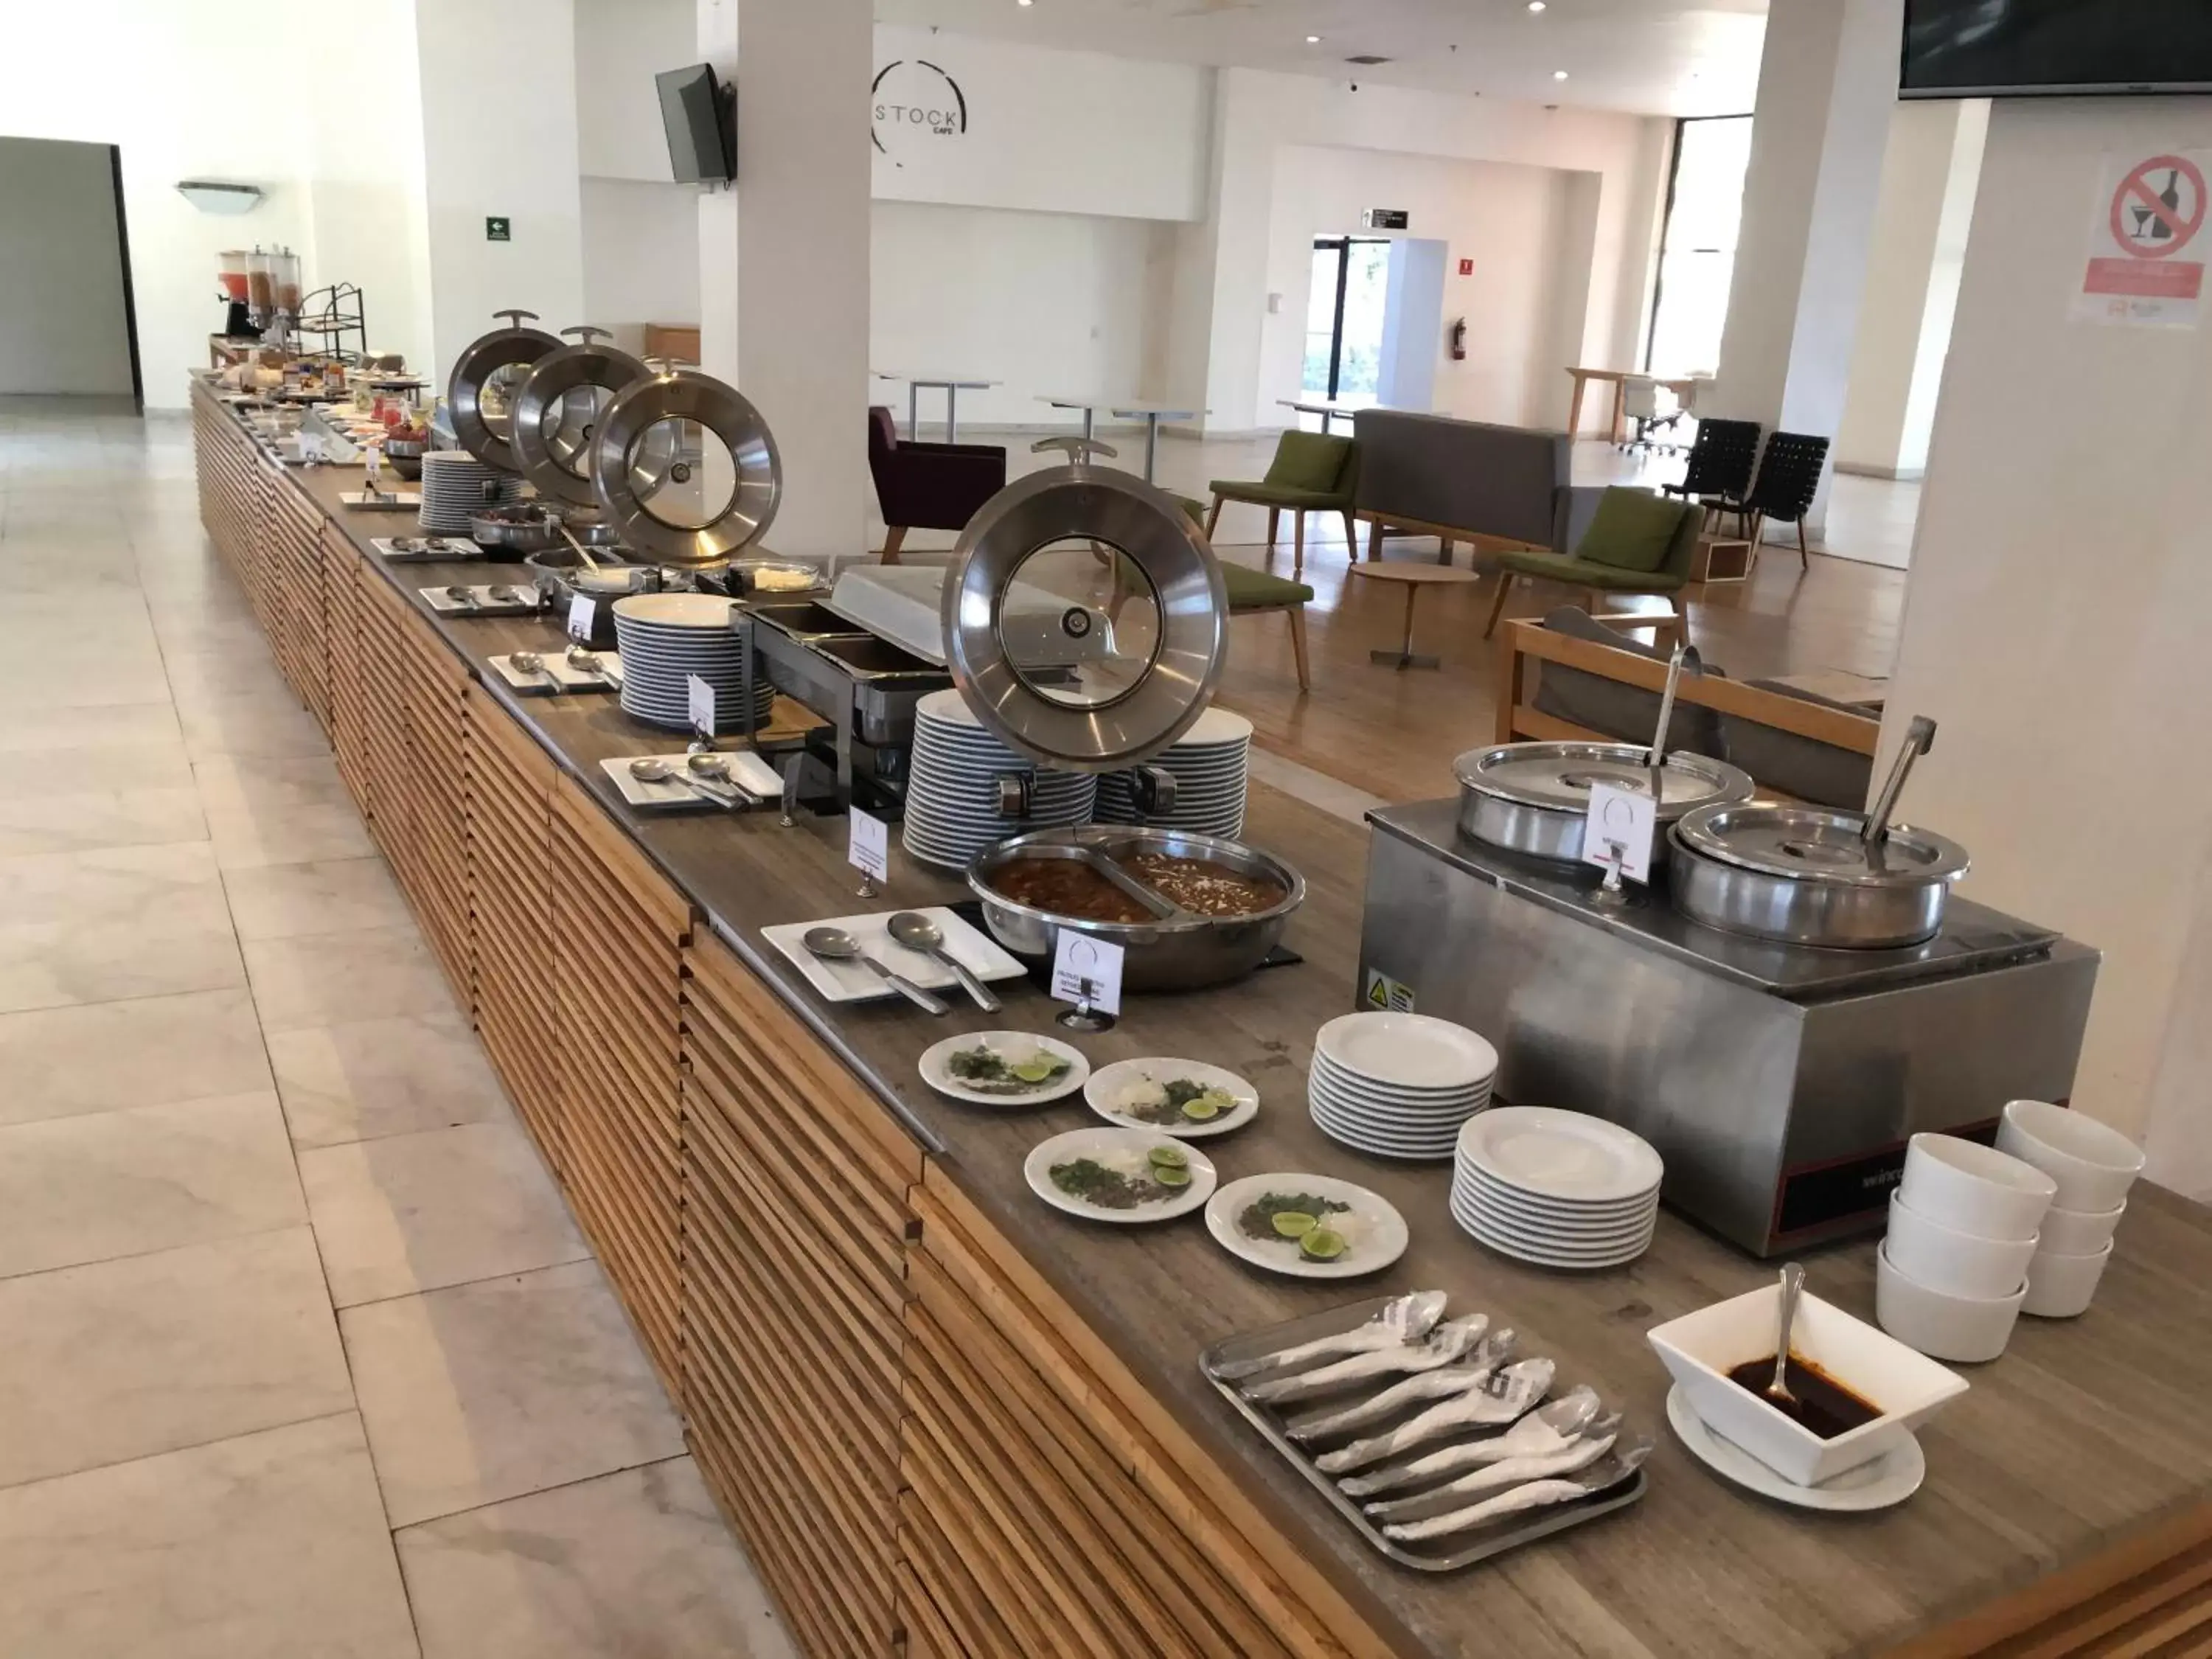 Buffet breakfast in Real Inn Mexicali